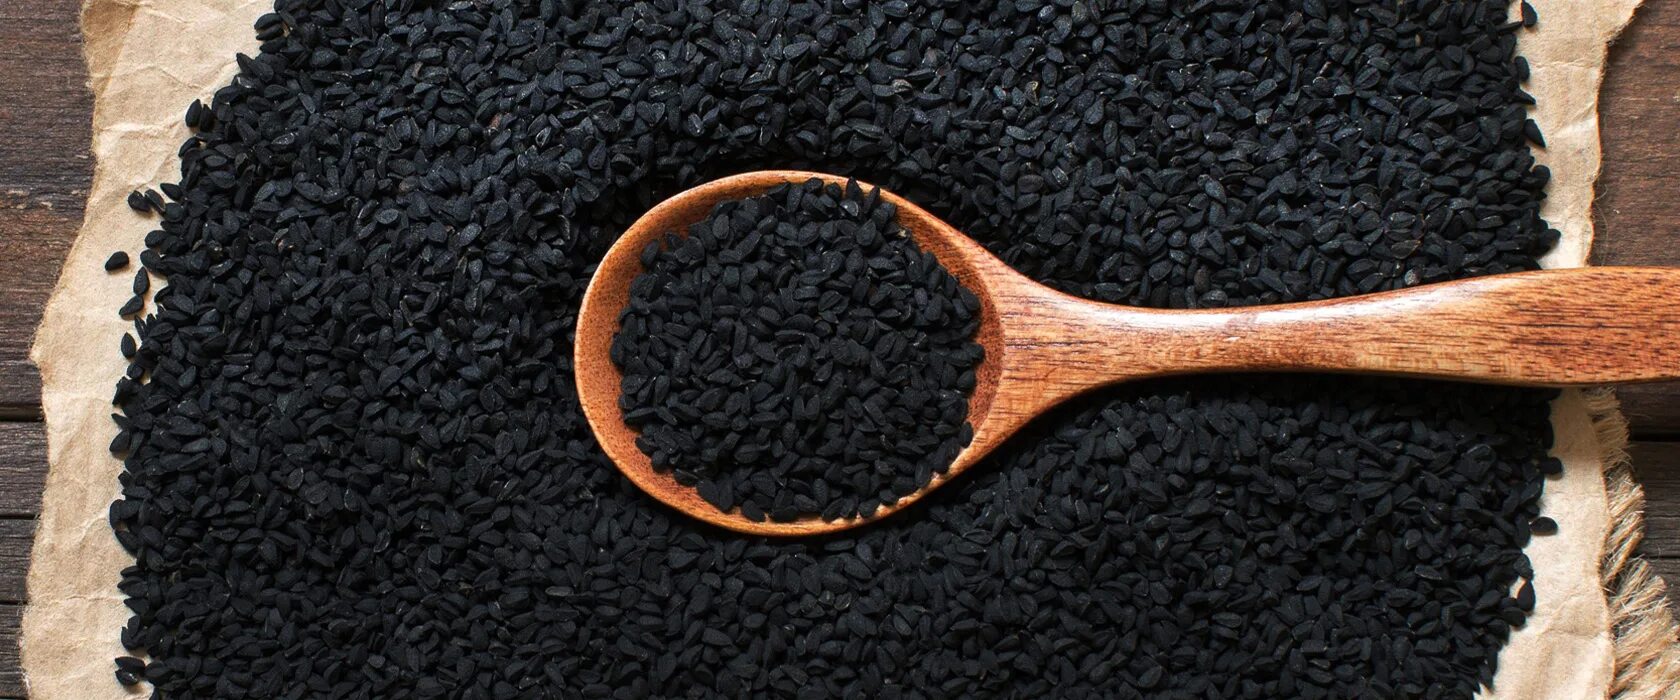 Семена черного тмина. Черный тмин Калонджи (семена) Kalonji. Черные семена. Черное зерно.